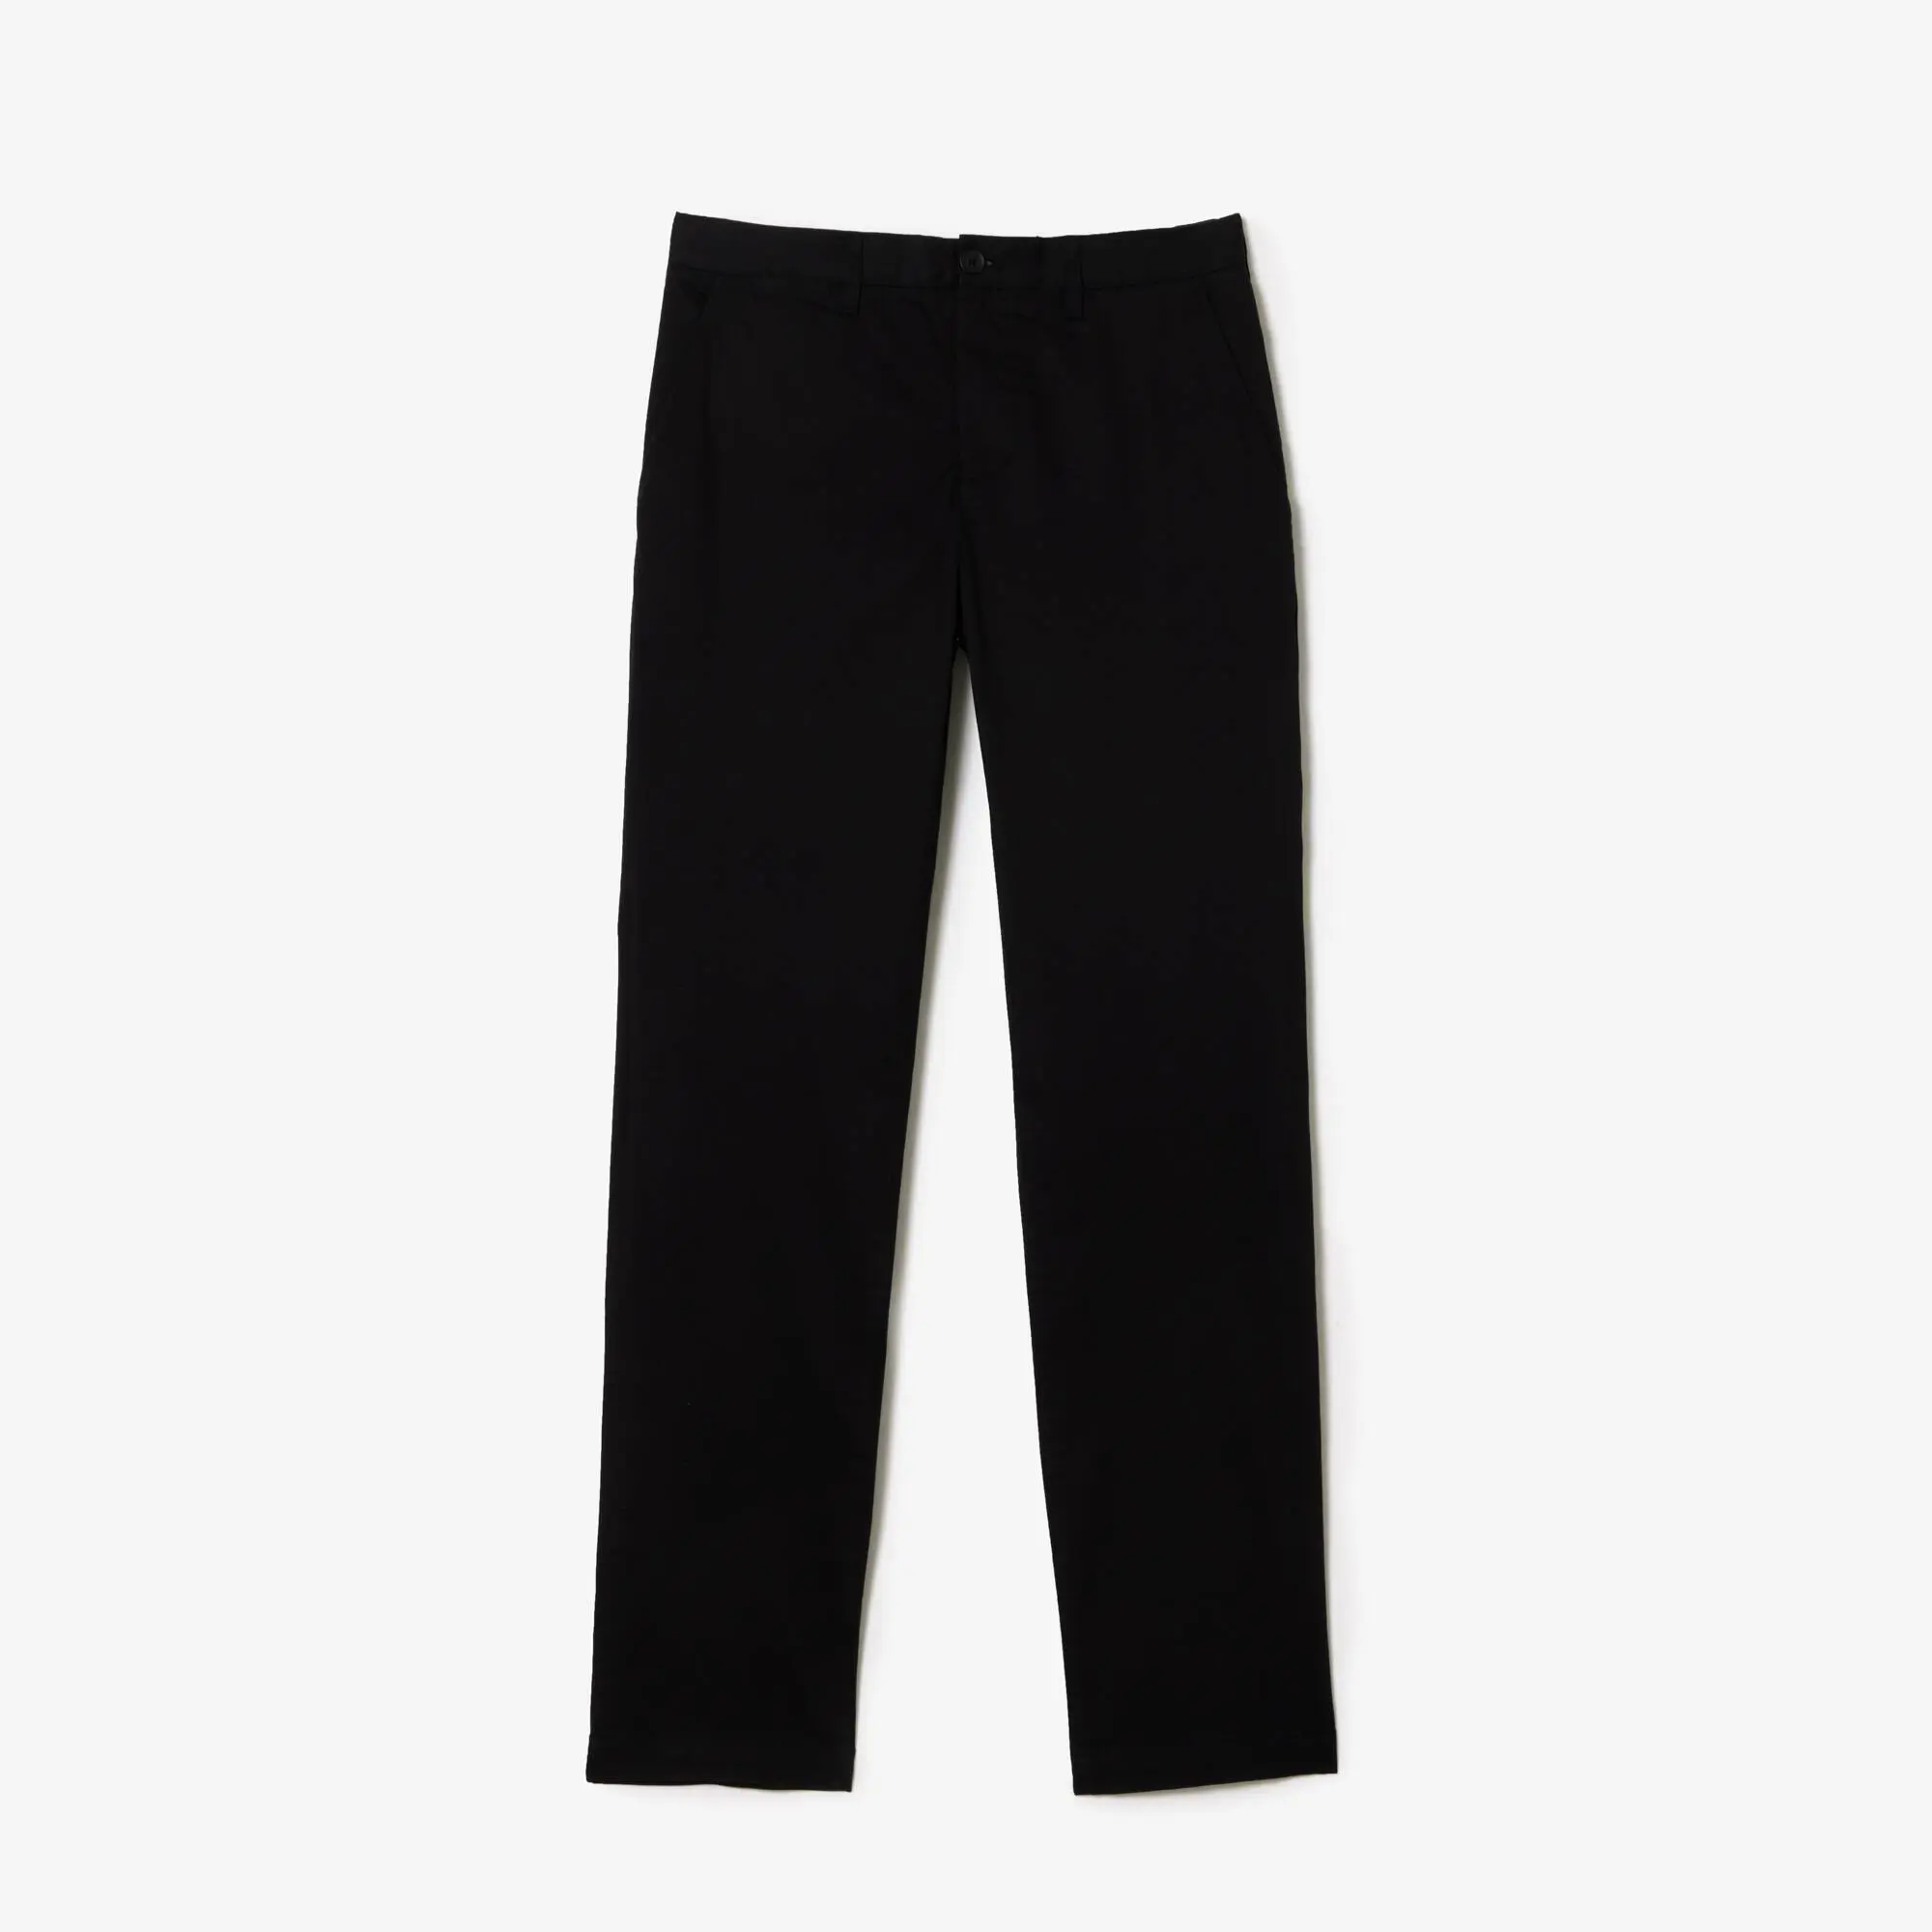 Lacoste Pantaloni da uomo slim fit in cotone elasticizzato New Classic. 2